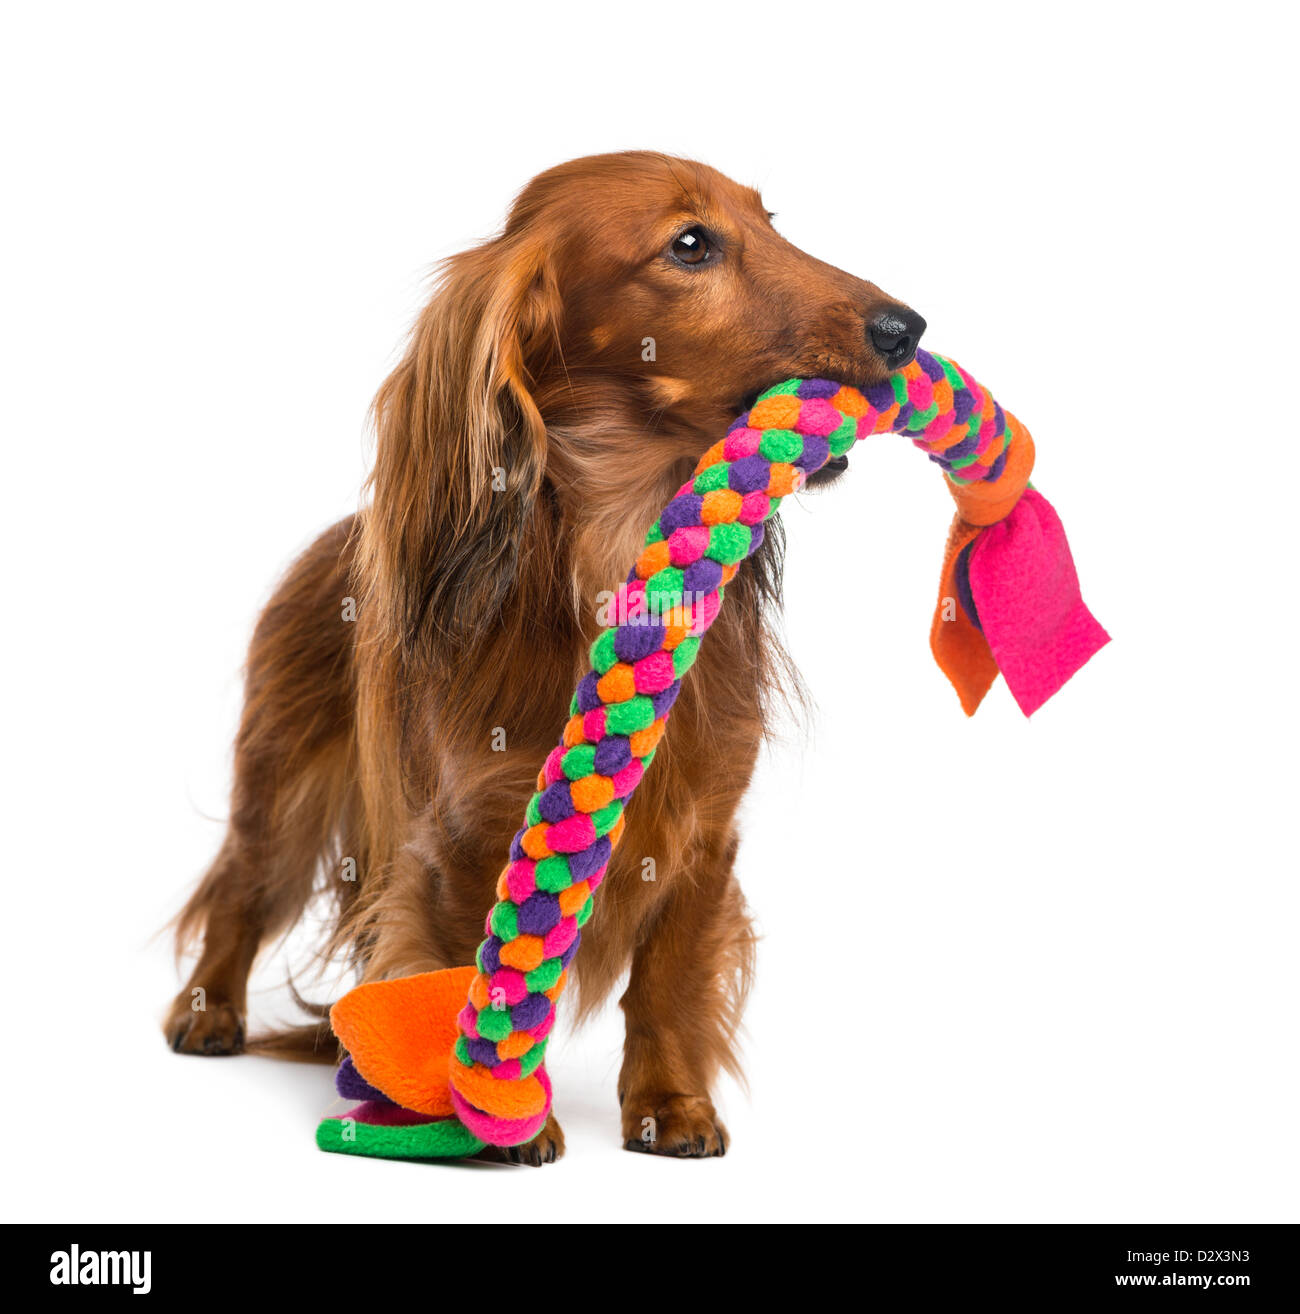 Dackel, 4 Jahre alt, hält ein Hundespielzeug im Maul vor weißem Hintergrund Stockfoto